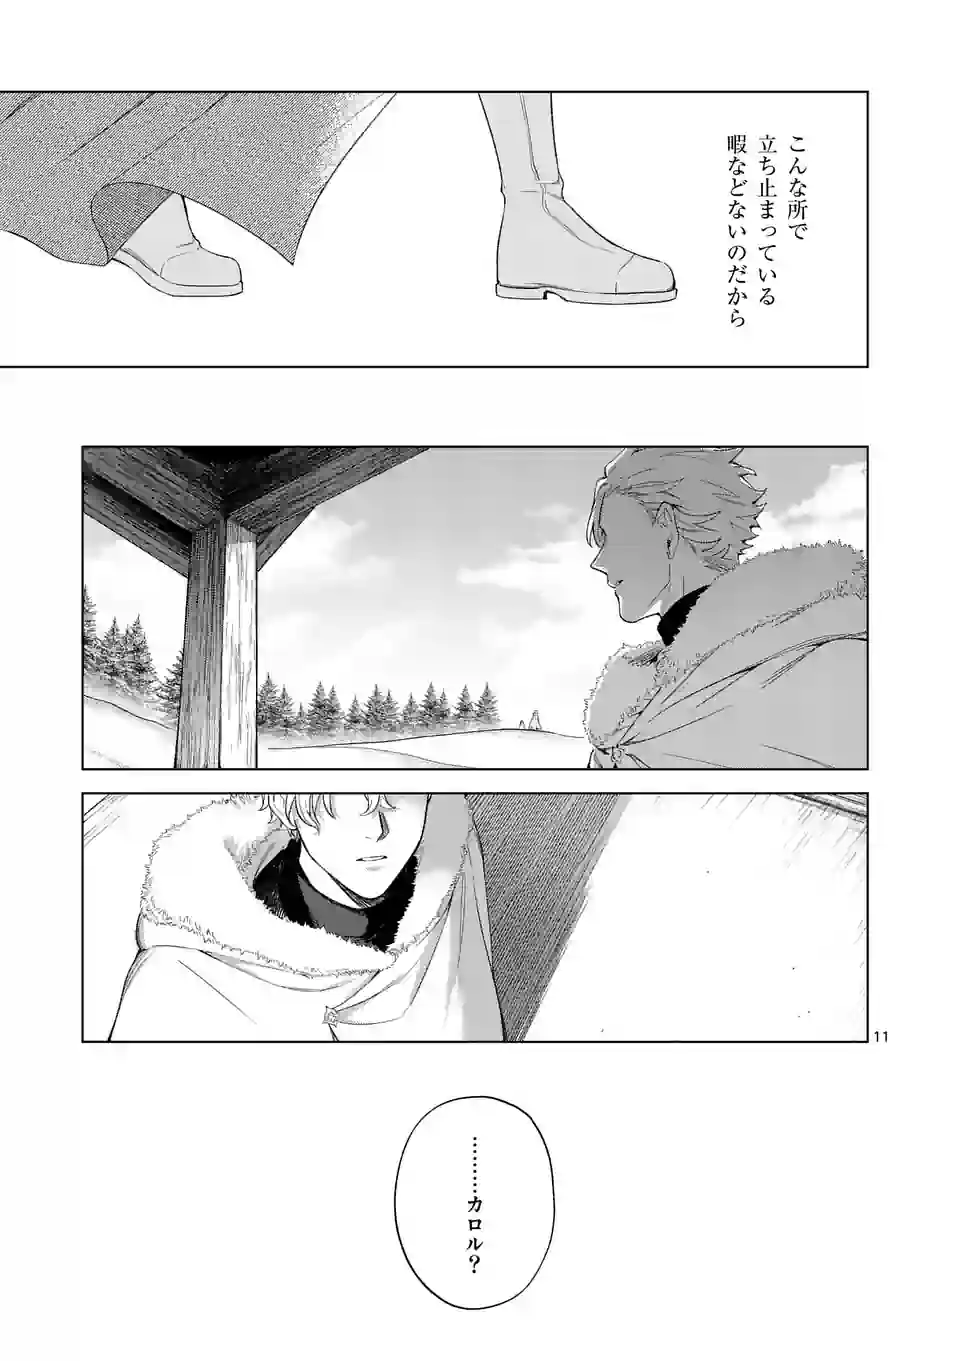 Mou Kyoumi ga Nai to Rikonsareta Reijou no Igai to Tanoshii Shinseikatsu - Chapter 7 - Page 11